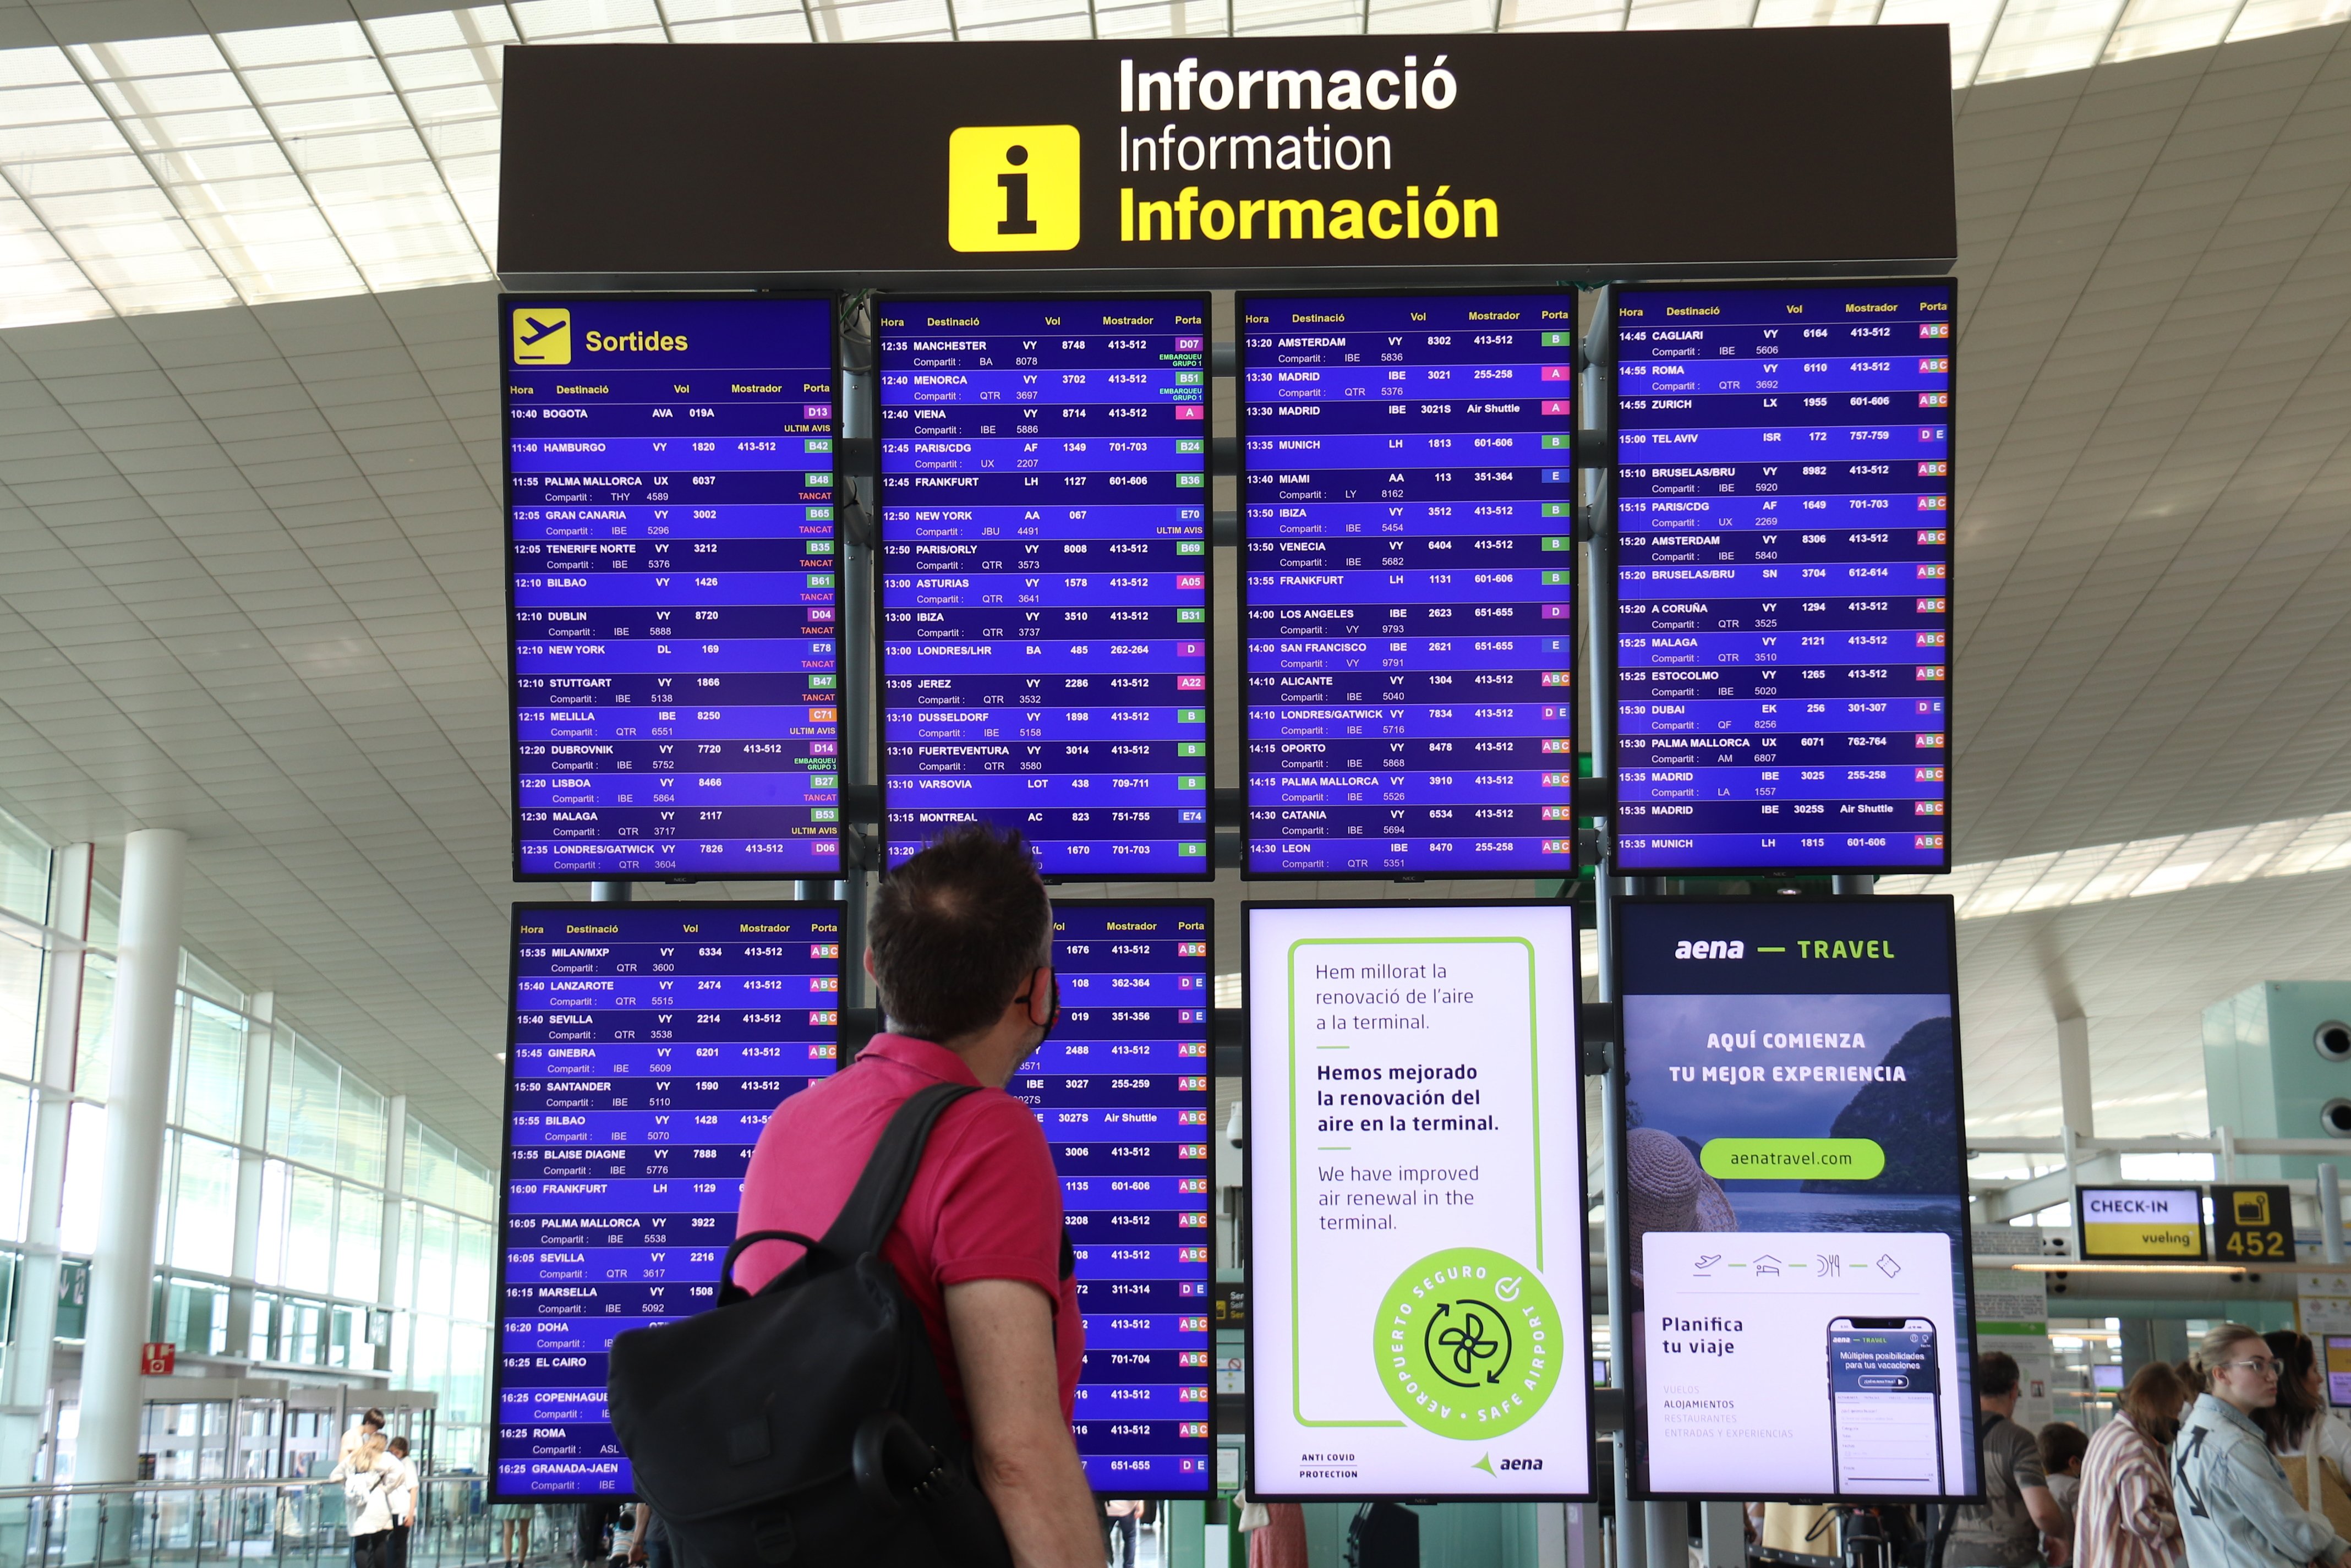 Empieza el verano con un caos en aeropuertos europeos que se puede reproducir en Catalunya